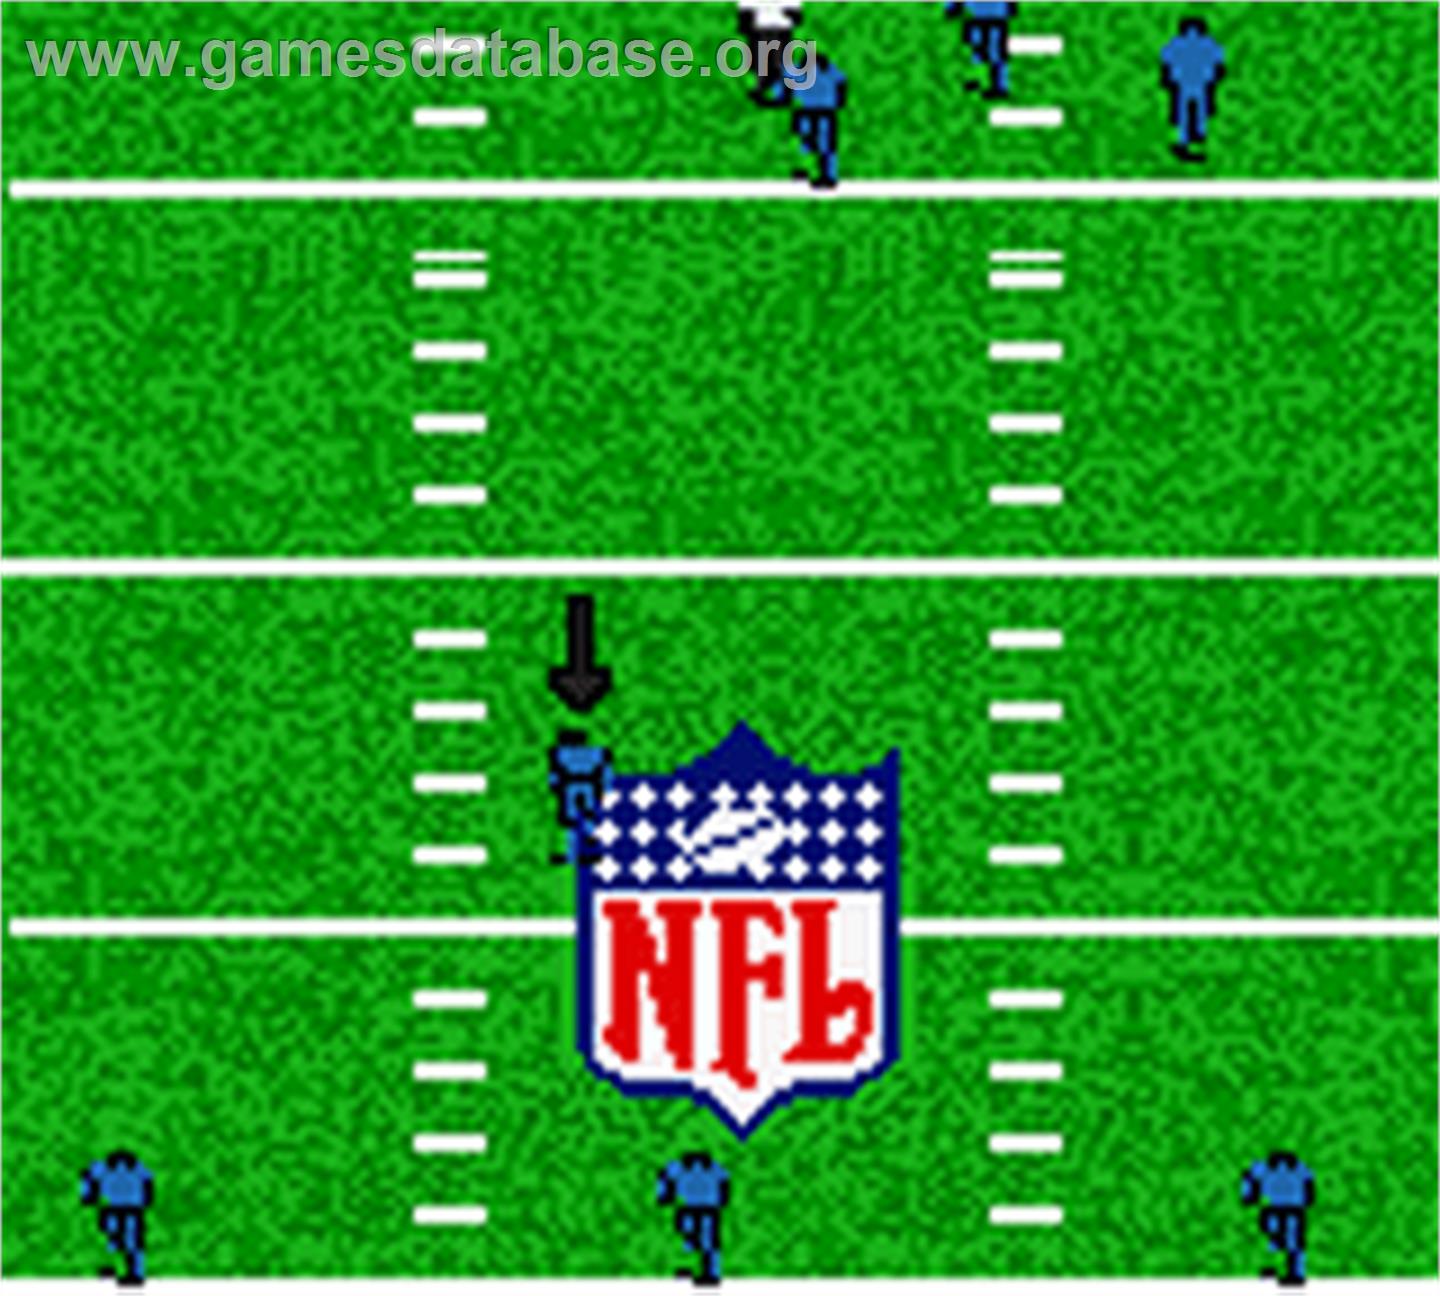 Madden NFL 2002 - Nintendo Game Boy Color - Artwork - In Game